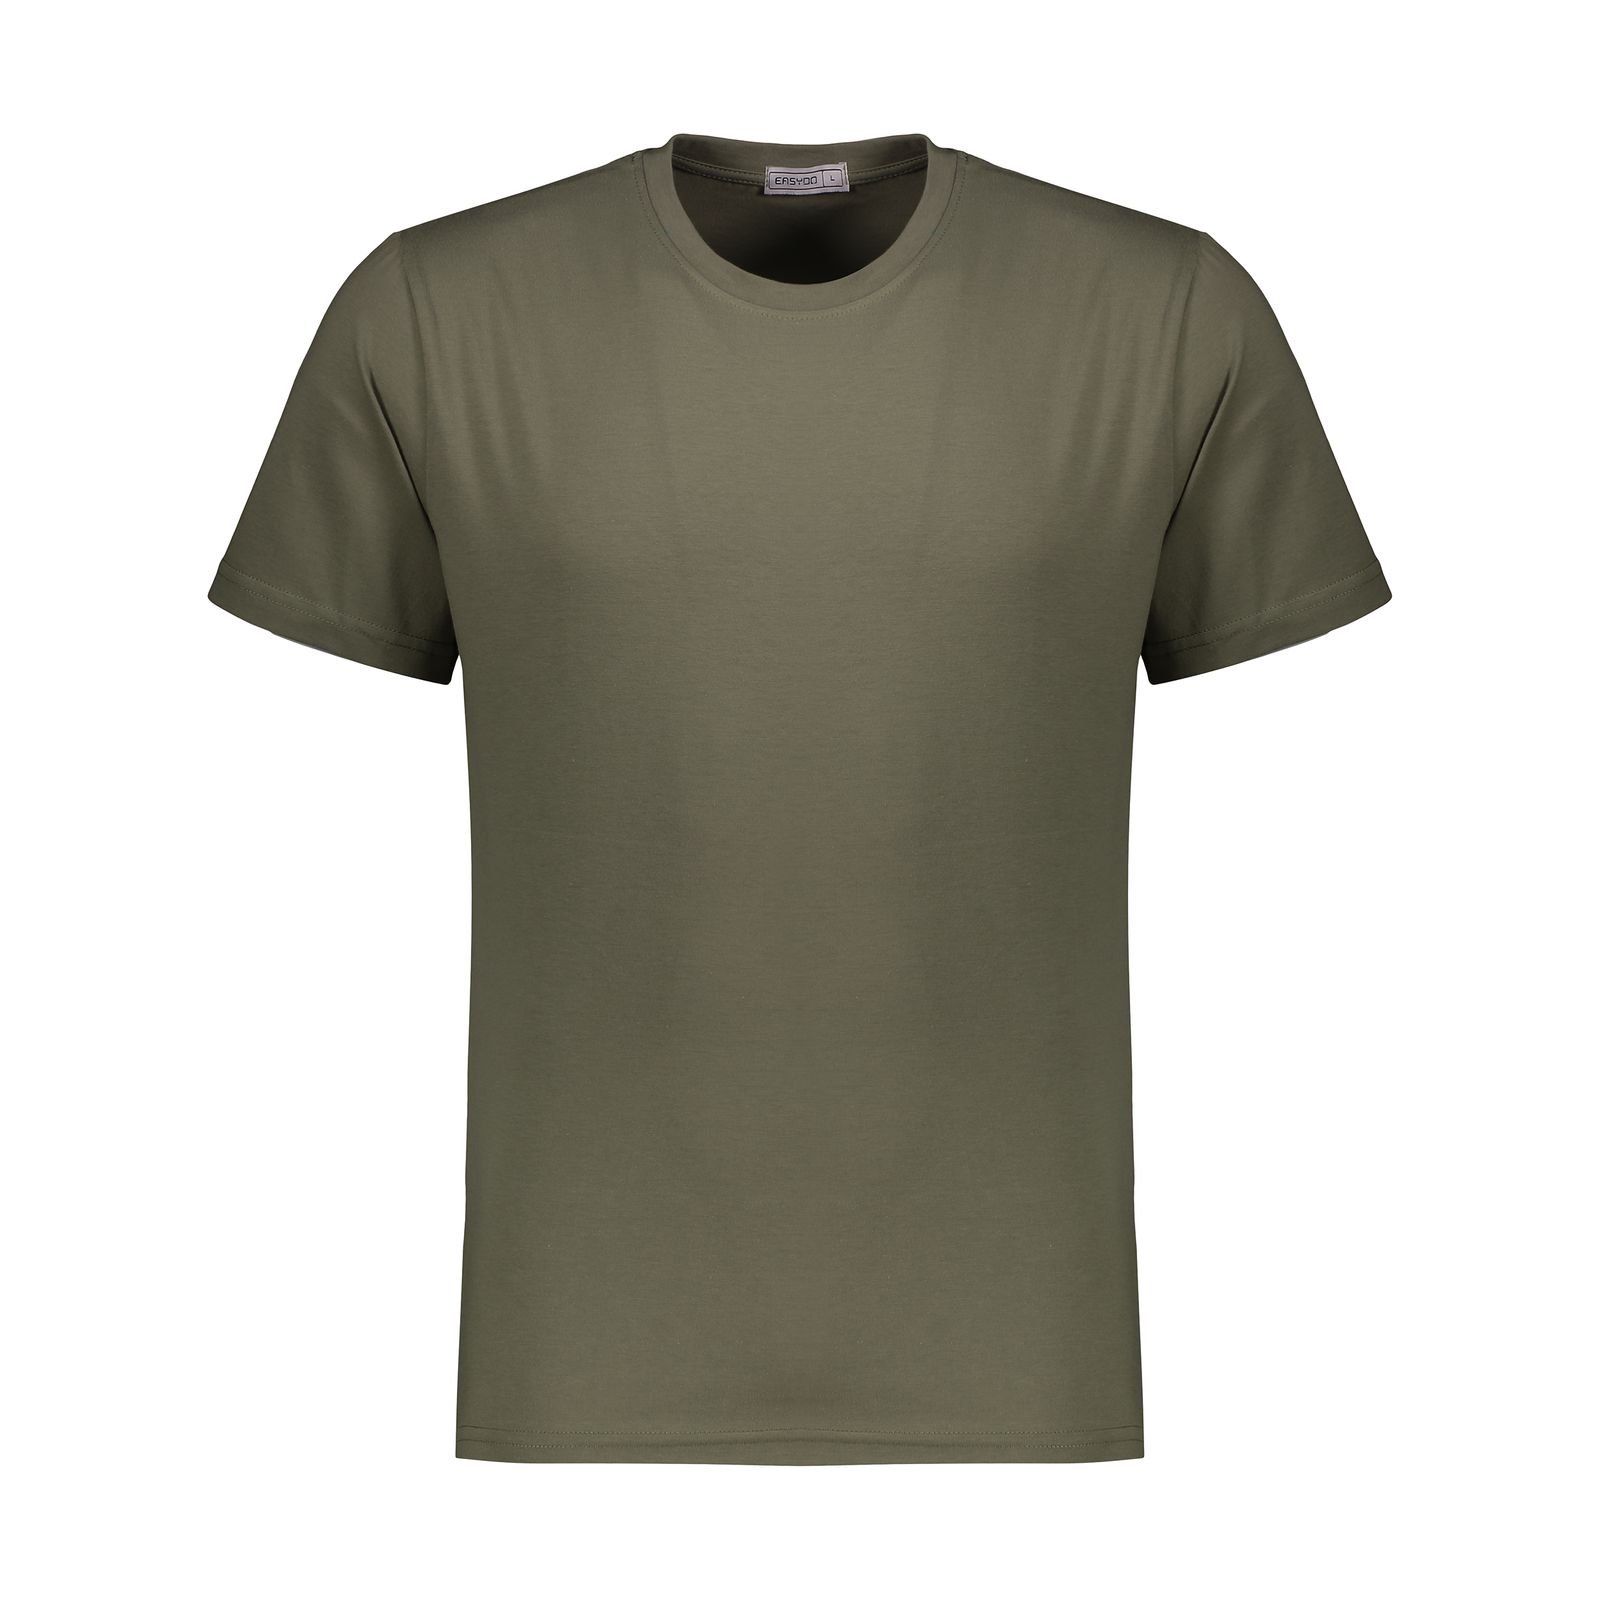 تی شرت مردانه ایزی دو مدل 218114978 -  - 1